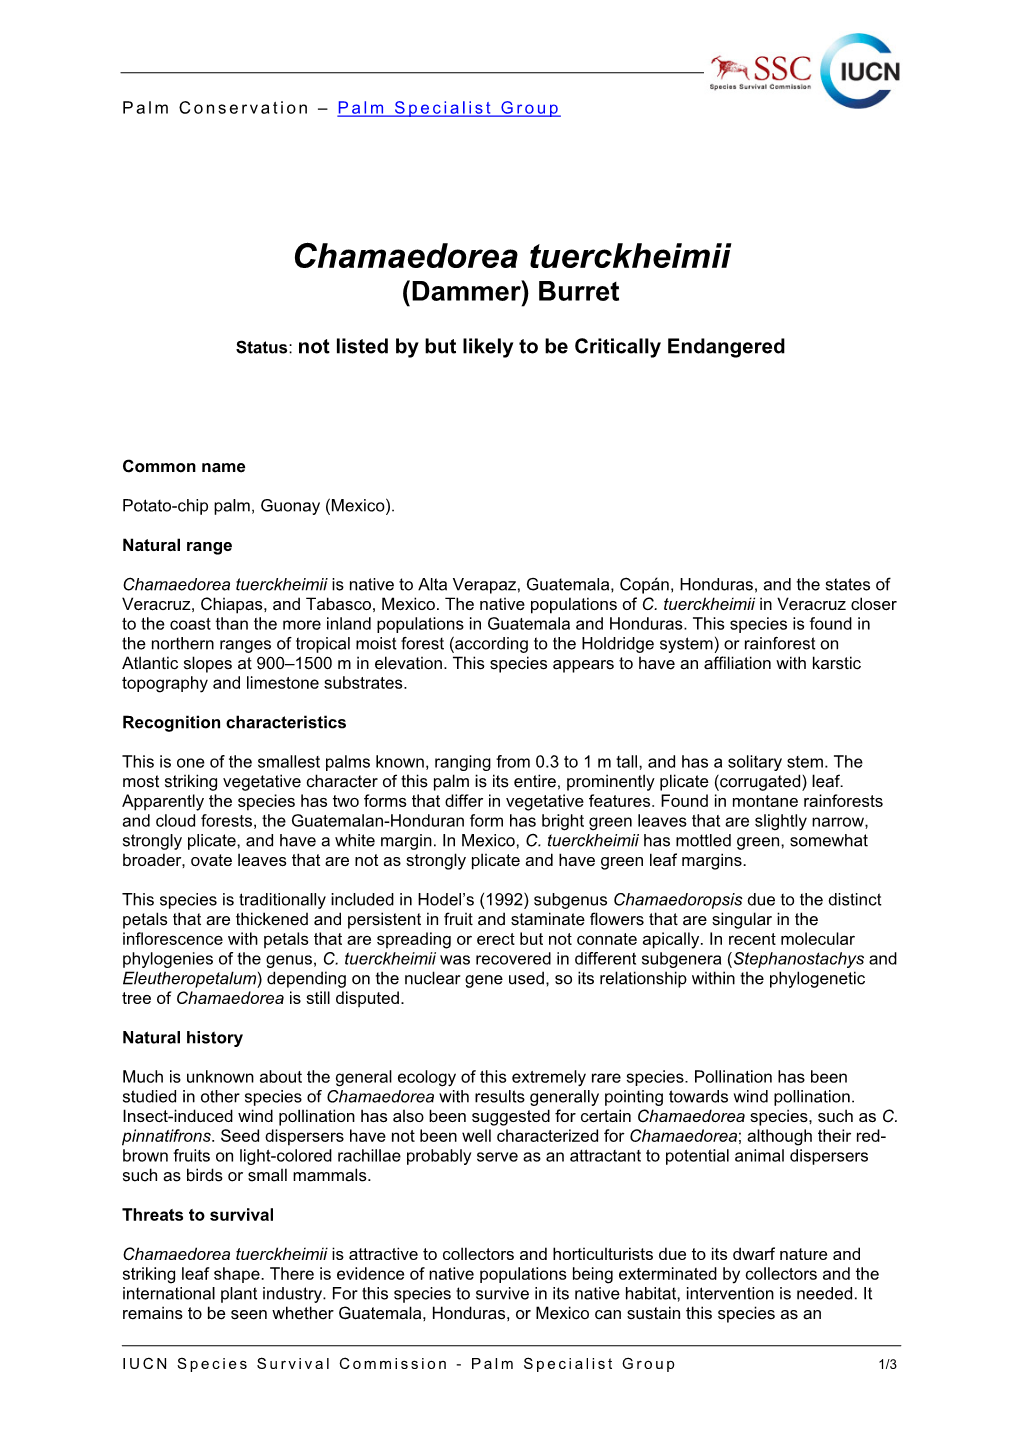 Chamaedorea Tuerckheimii (Dammer) Burret